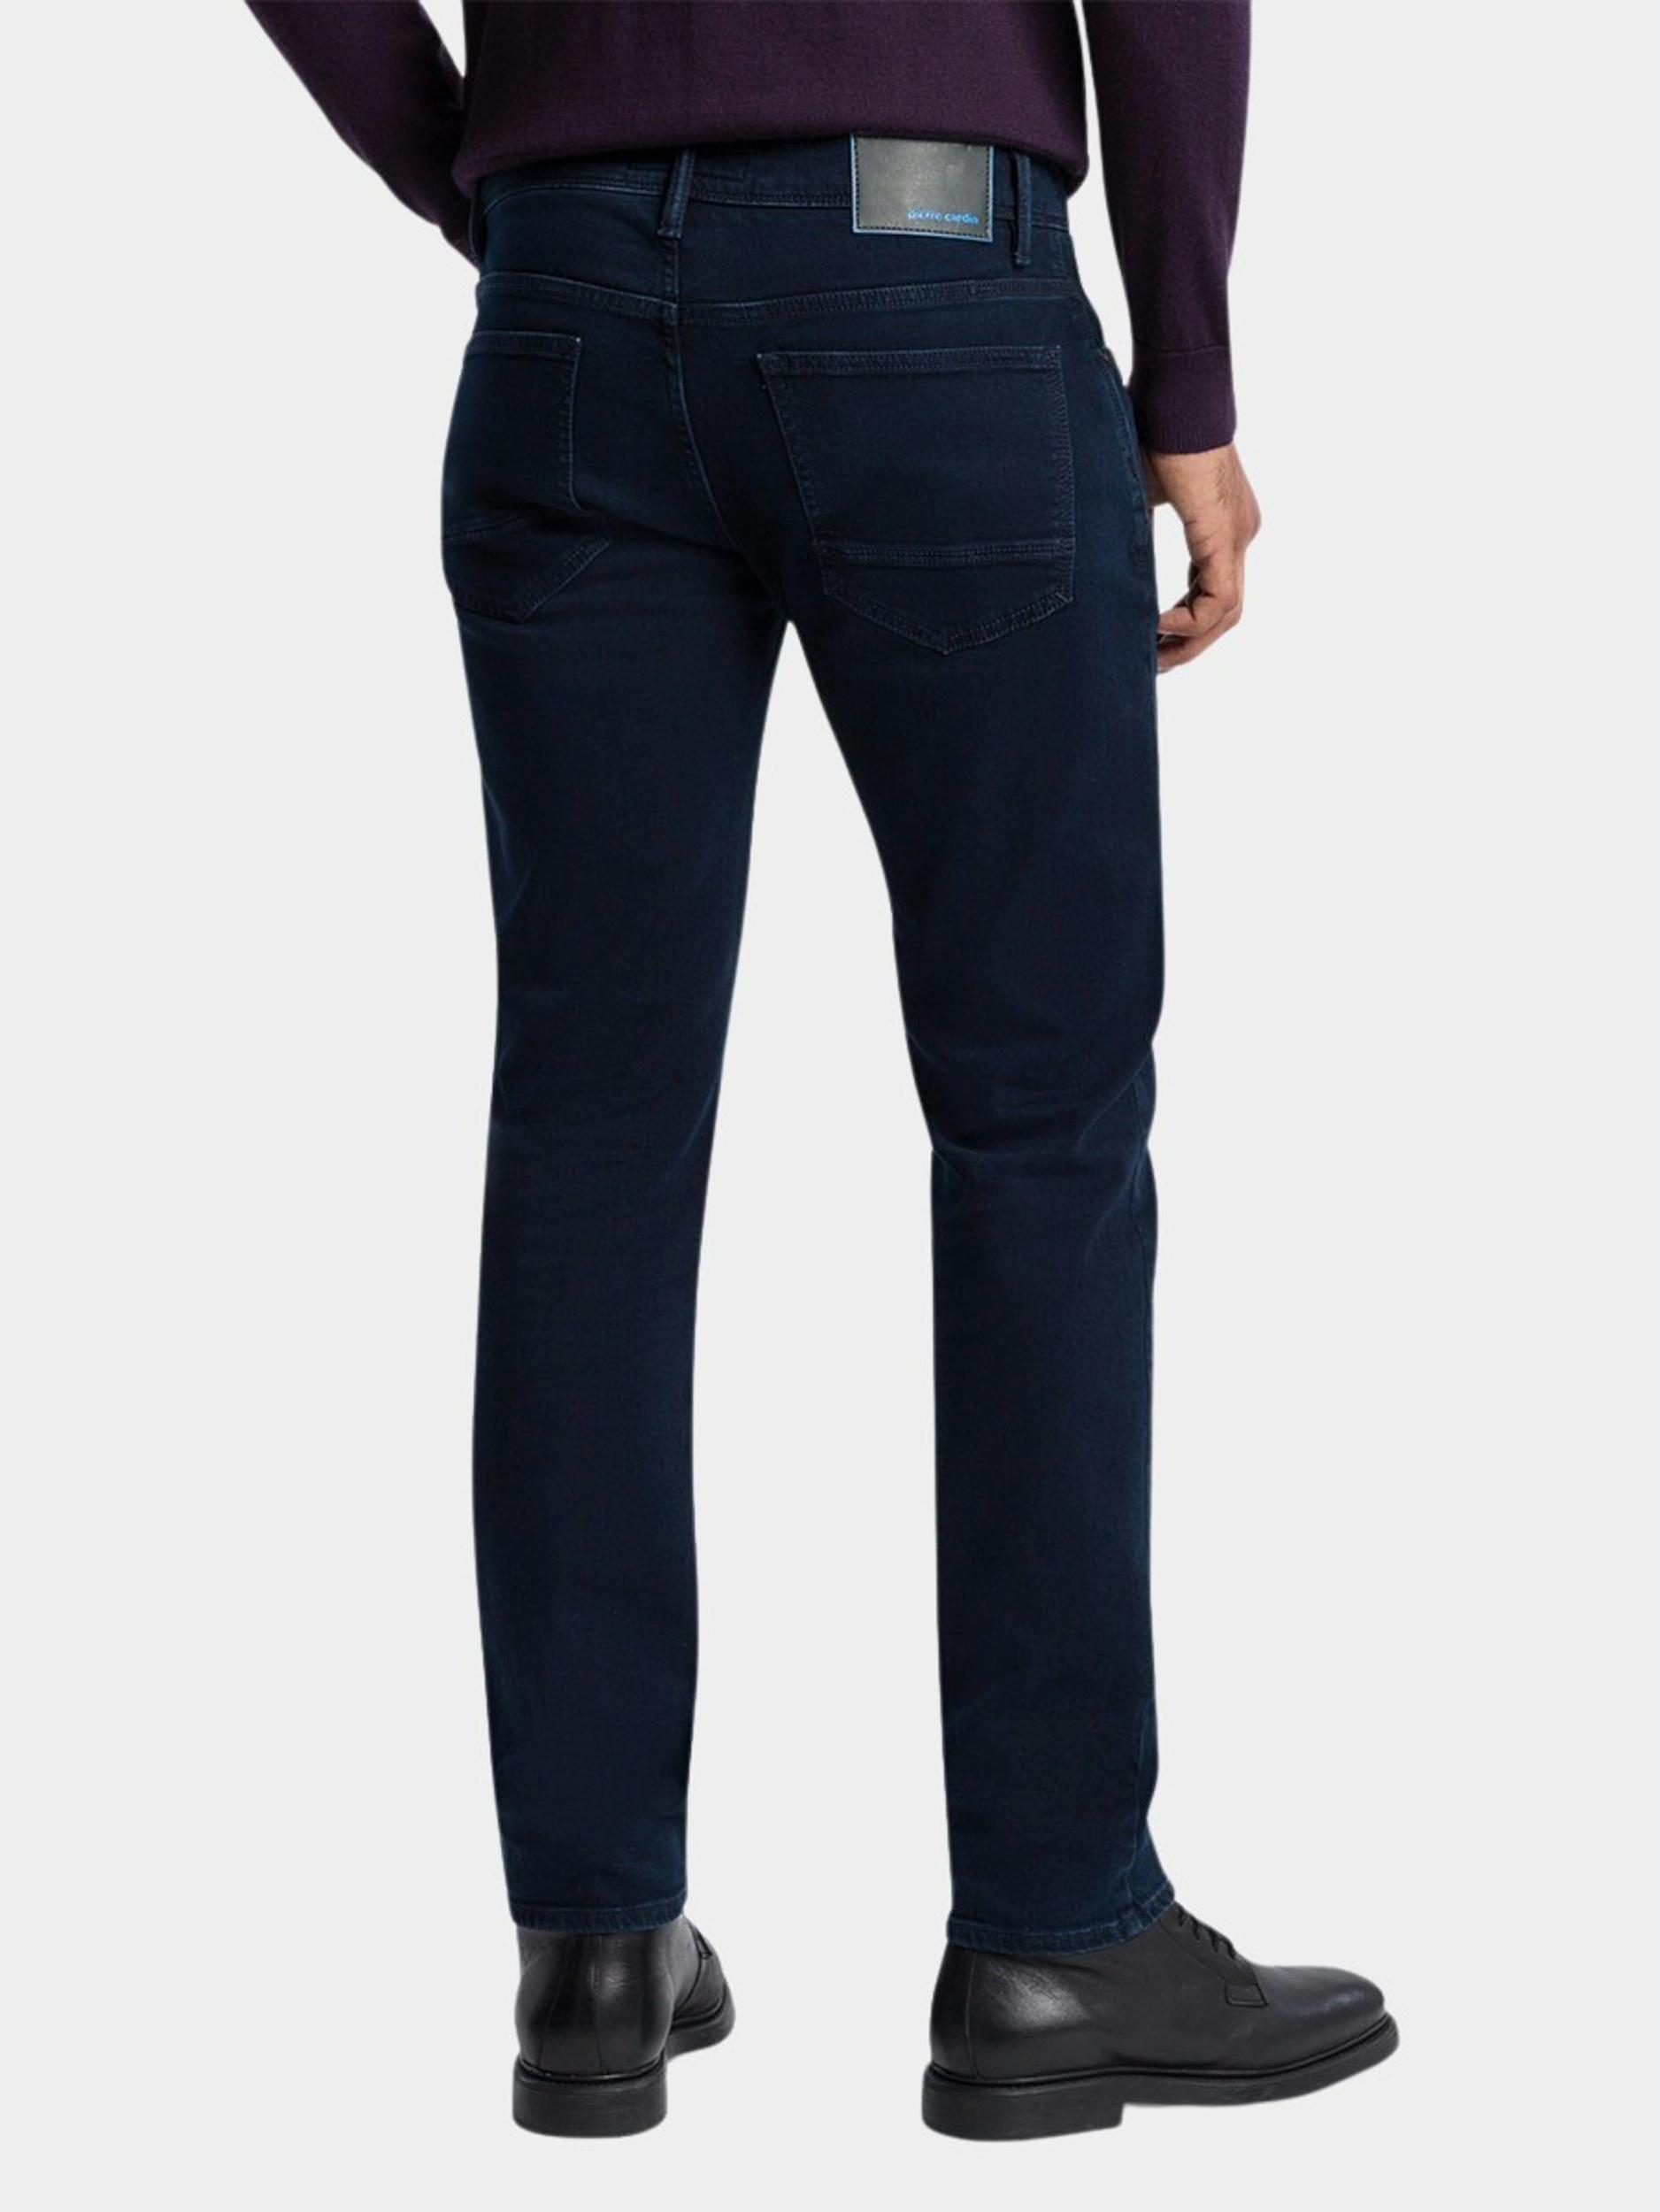 Pierre Cardin 5-Pocket Jeans Blauw  C7 35530.8051/6801